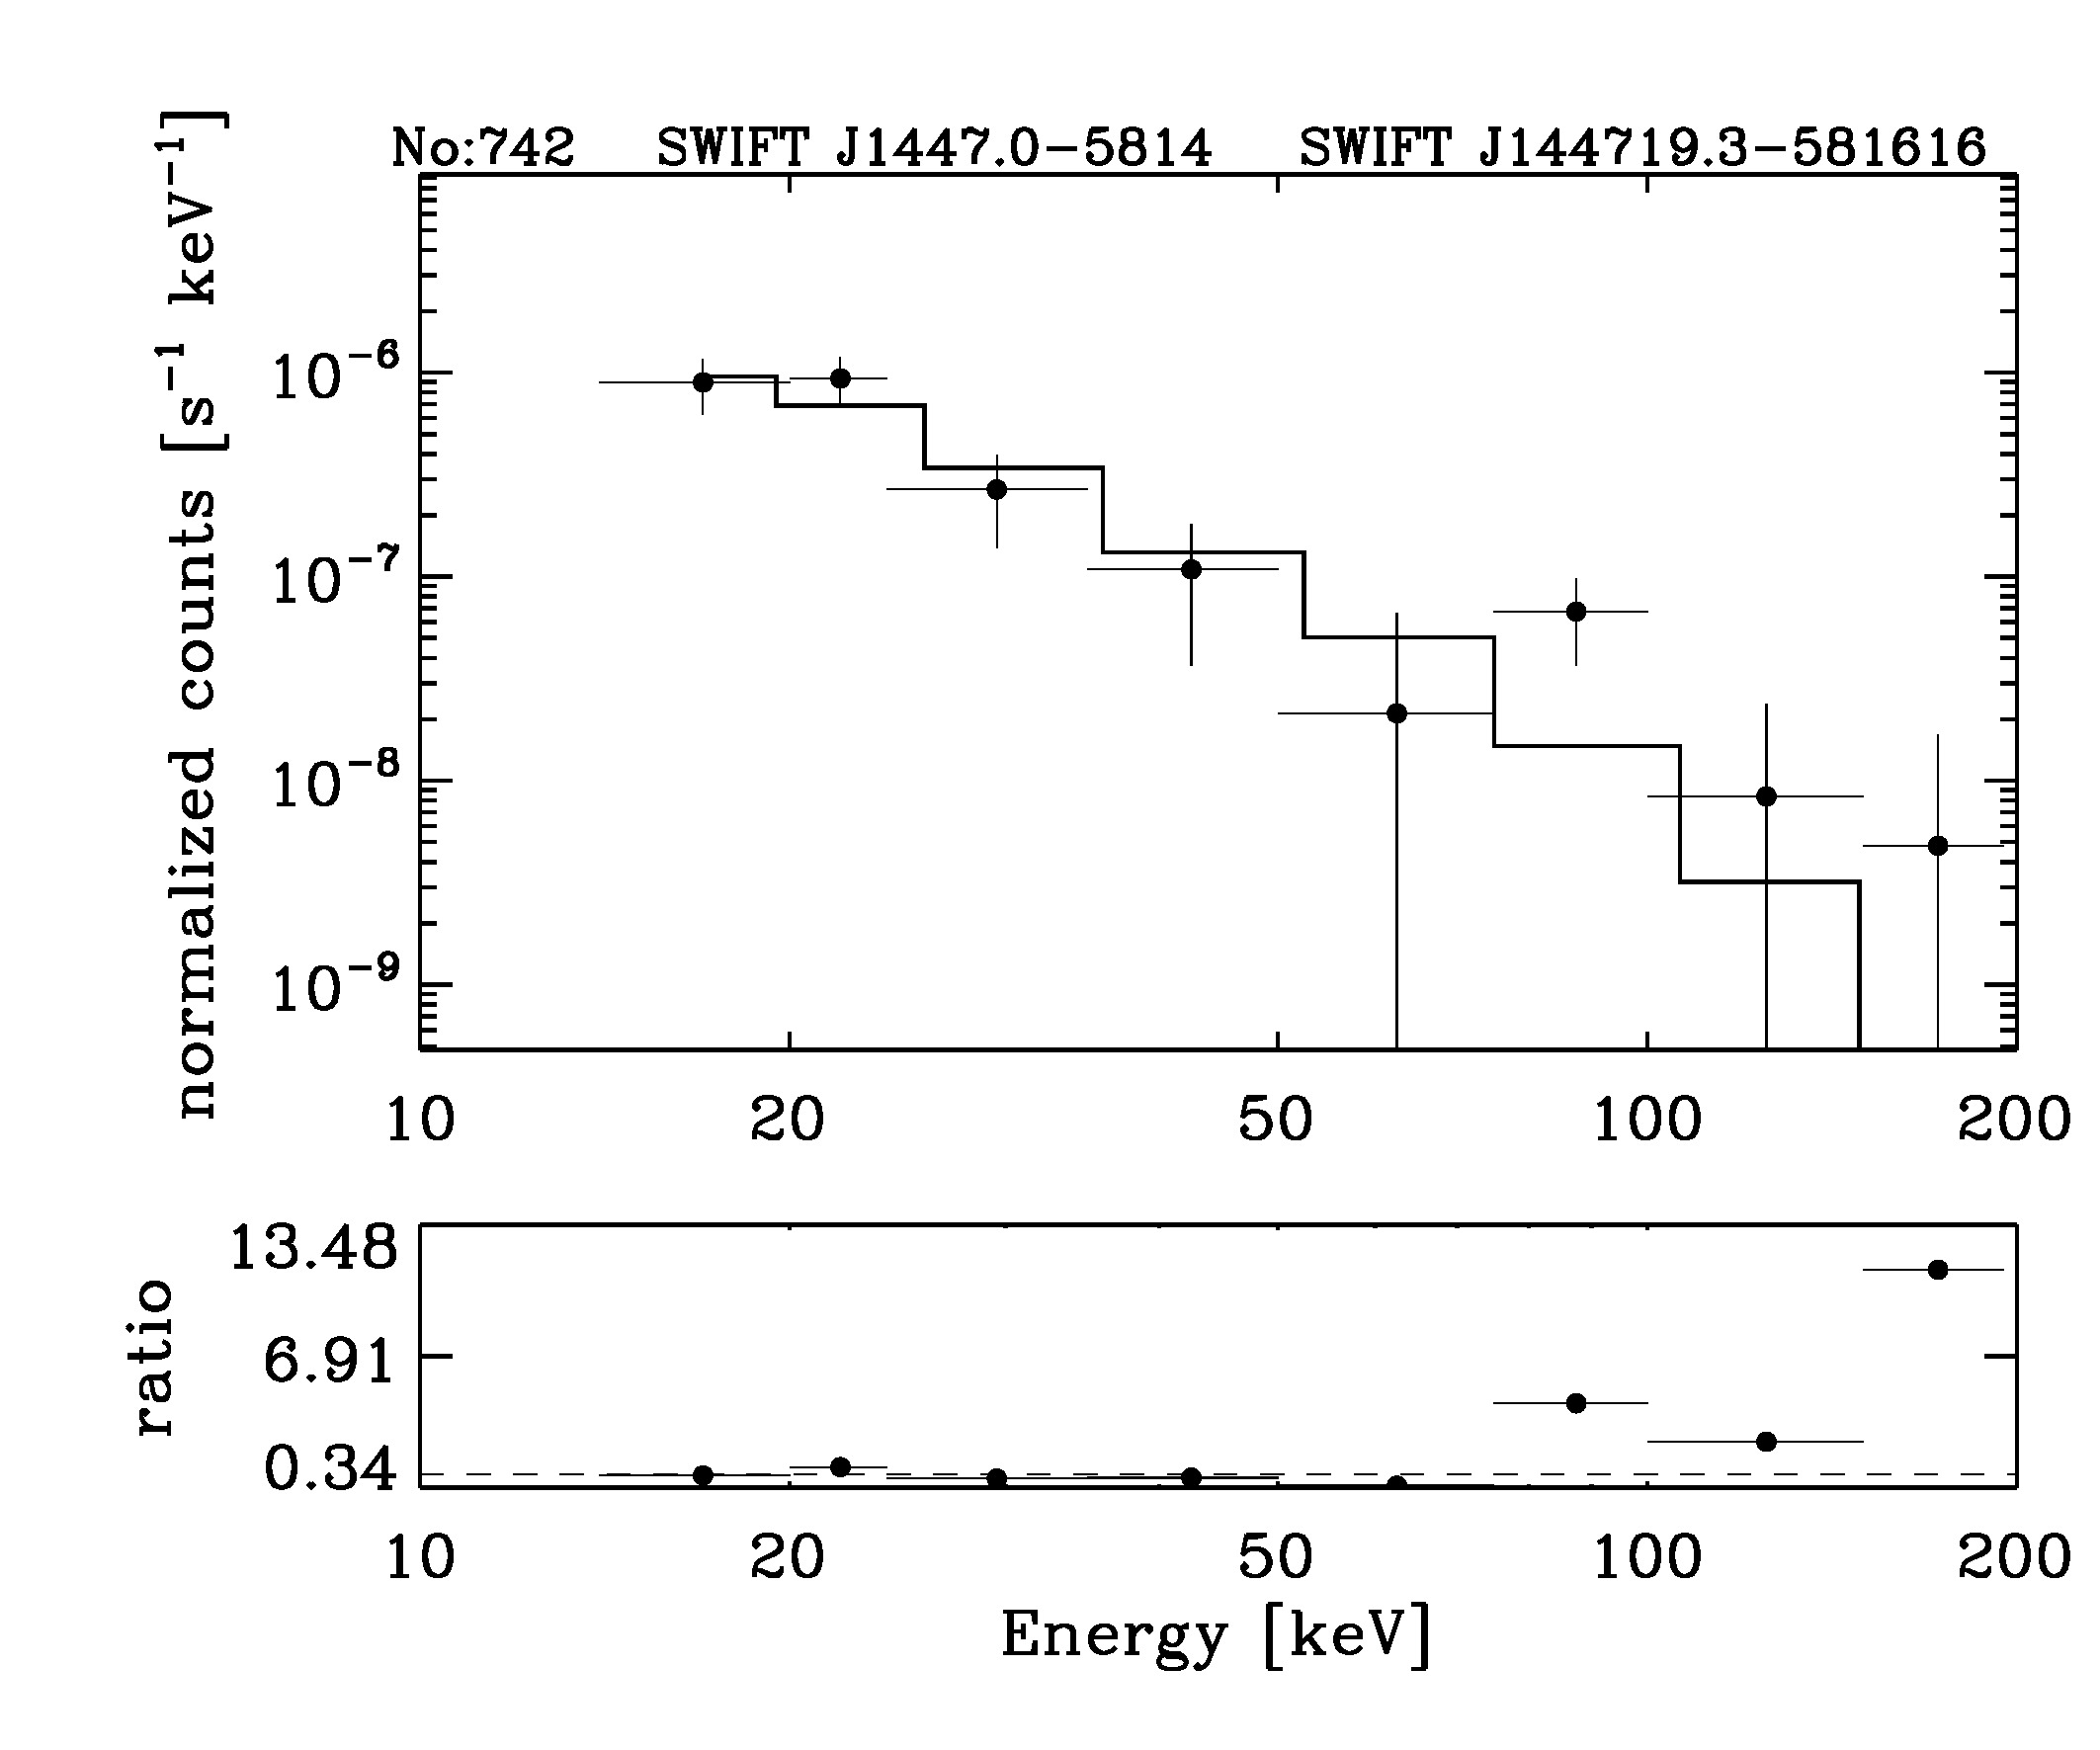 BAT Spectrum for SWIFT J1447.0-5814